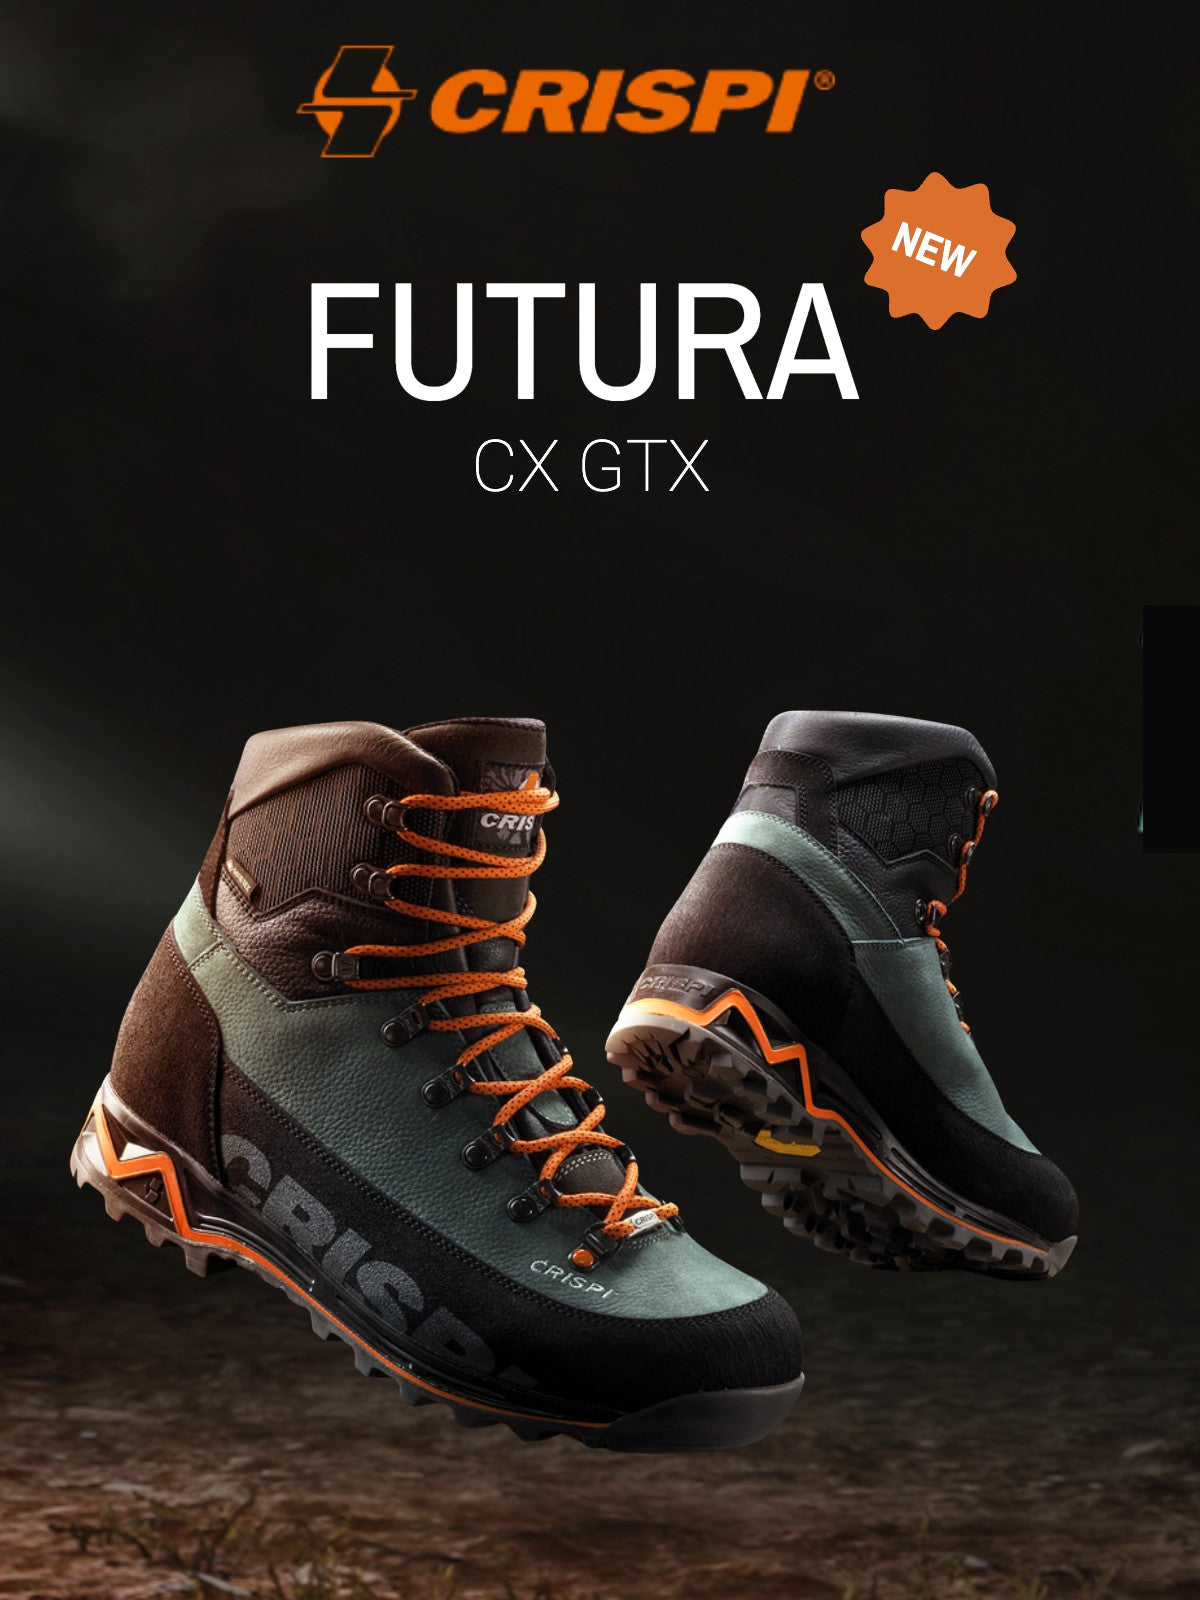 New Crispi Futura CX GTX Boots